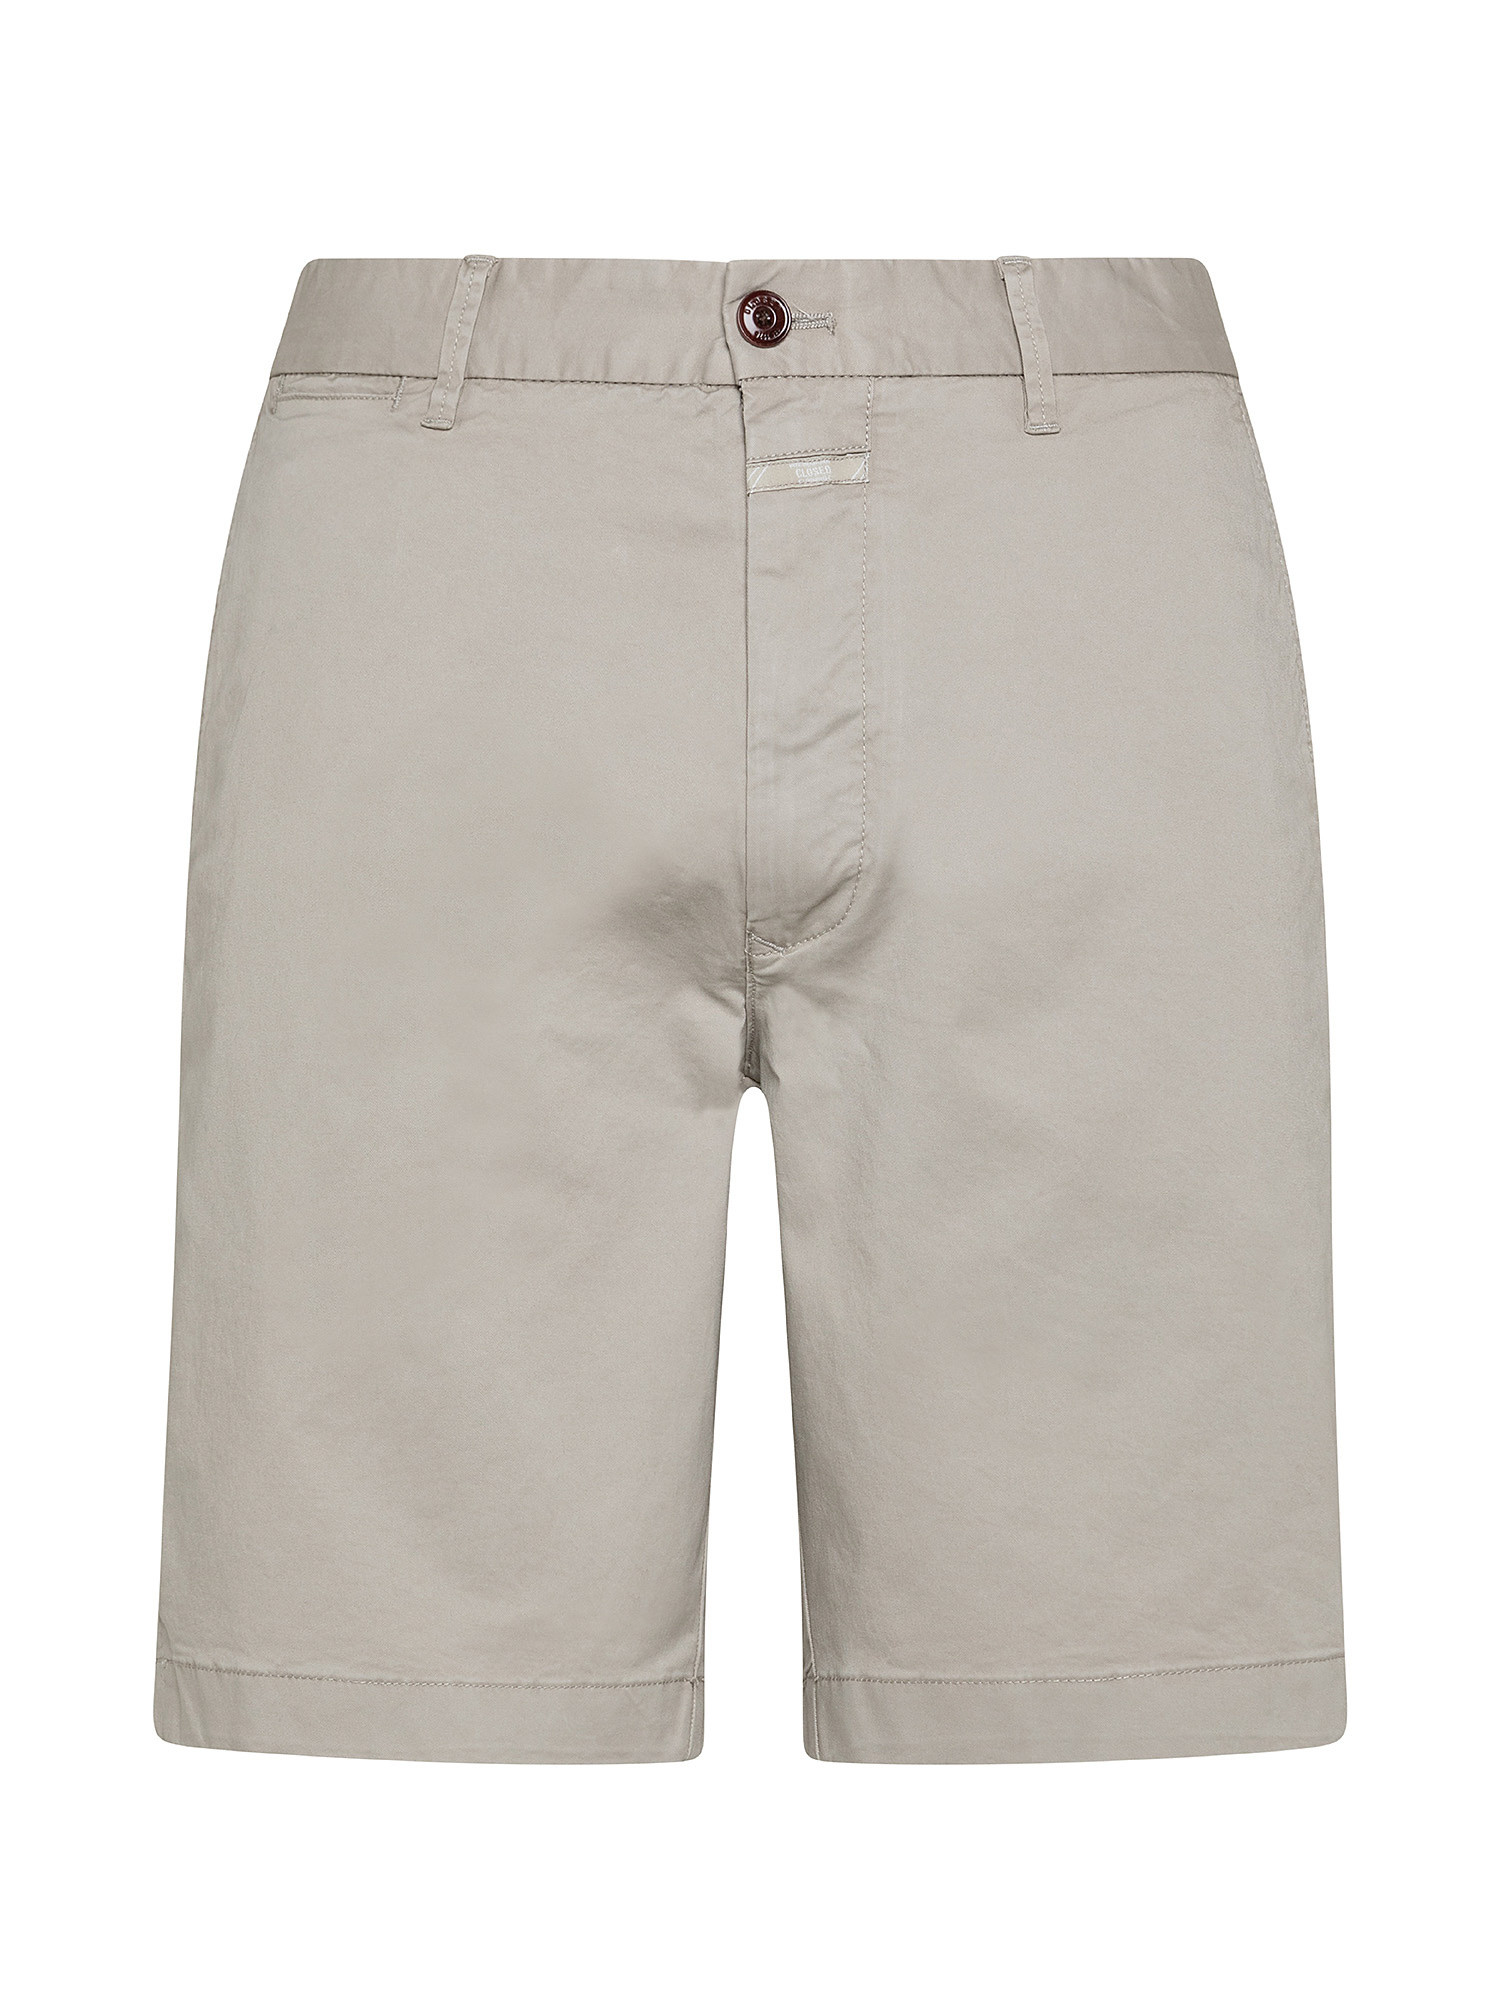 Chino shorts, Light Grey, large image number 0